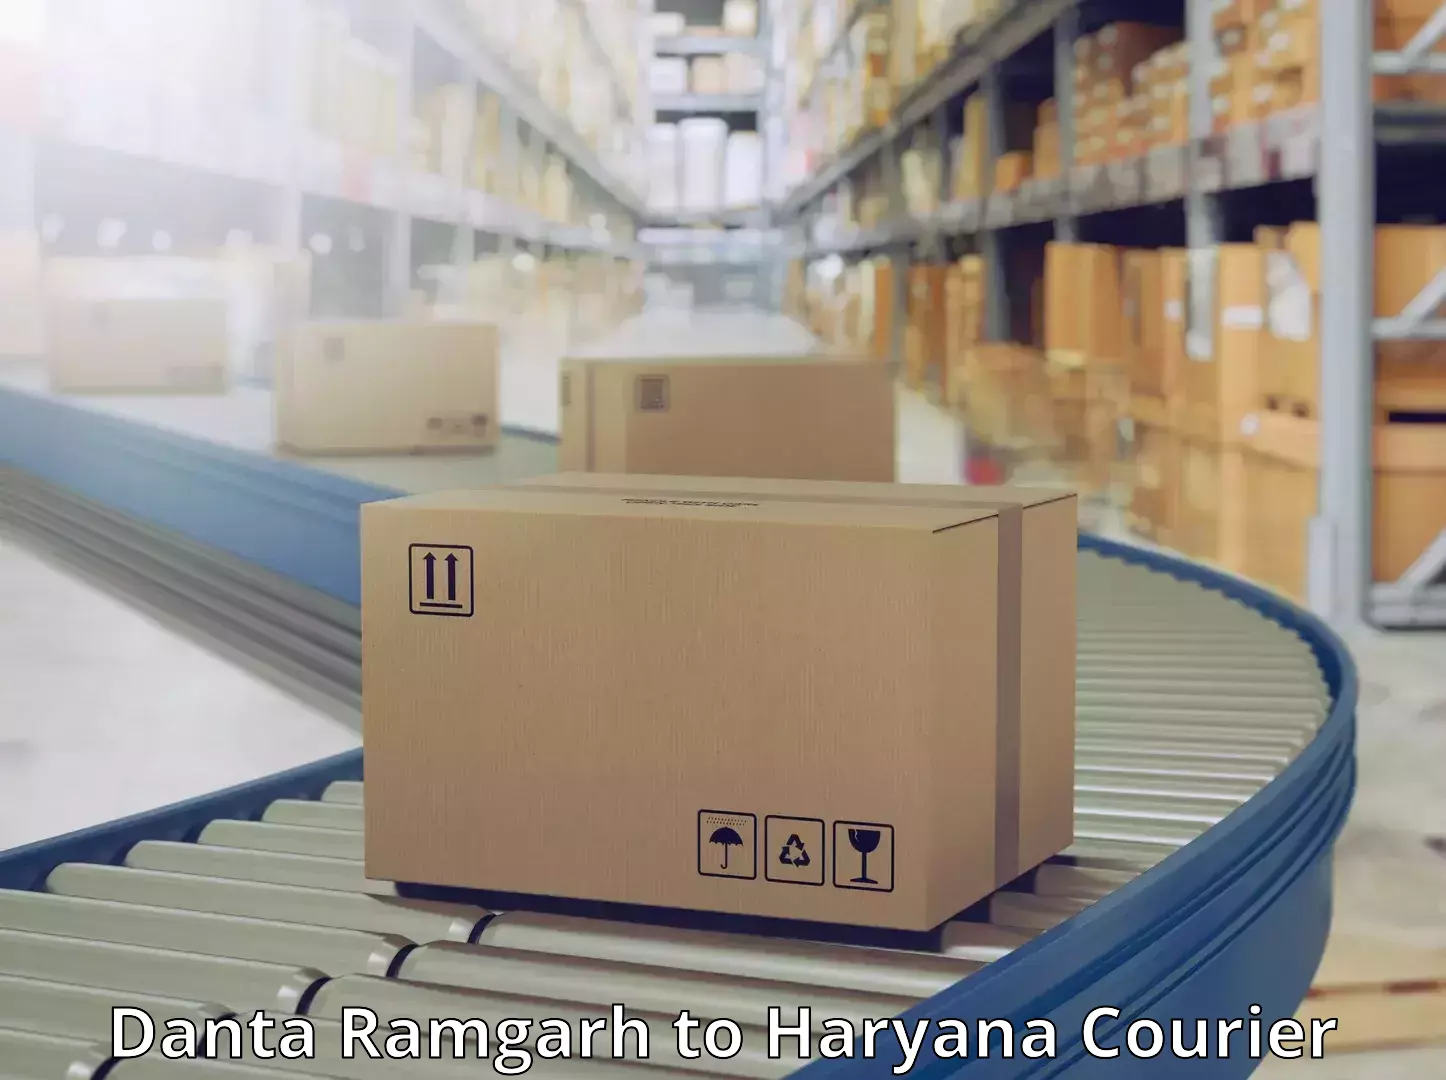 24/7 shipping services Danta Ramgarh to Sirsa